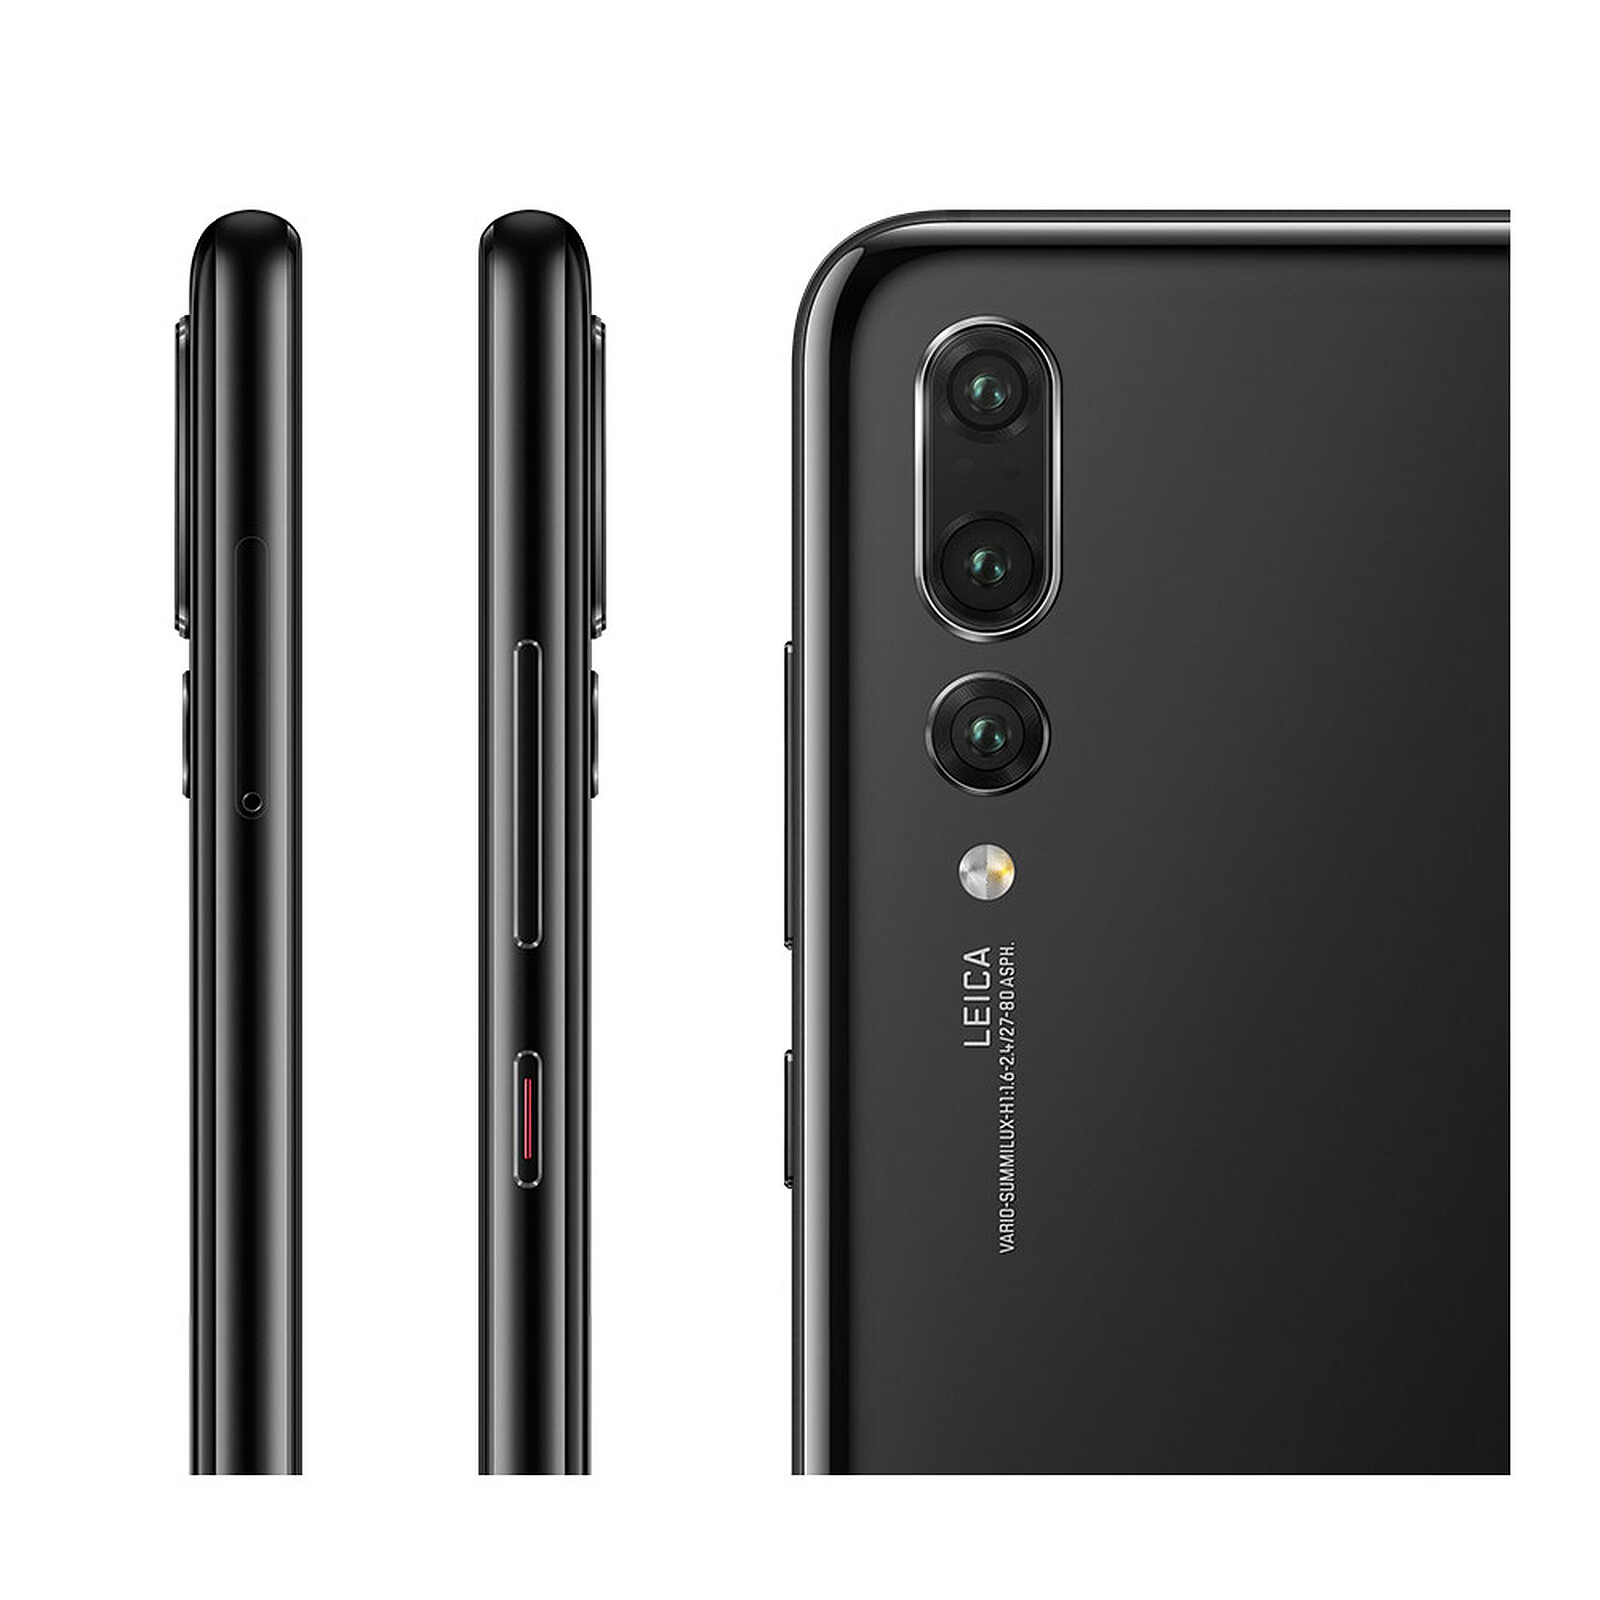 Nuevo Huawei P20 Pro: características, precio y ficha técnica